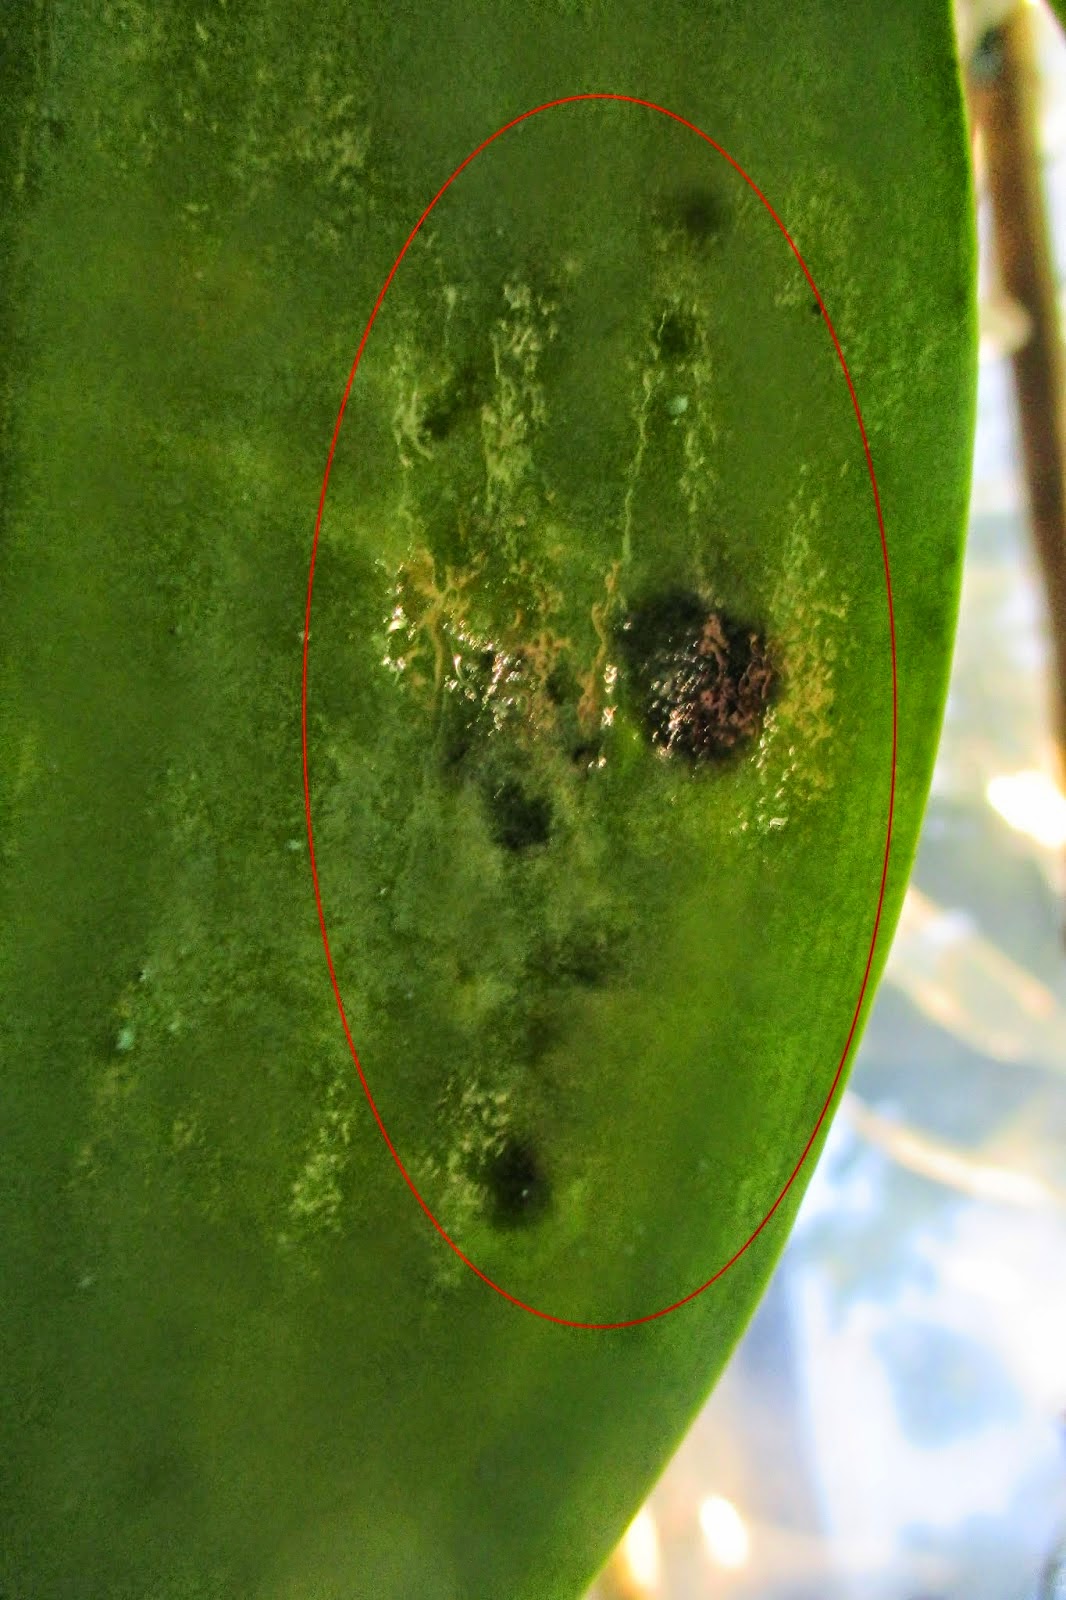 Mặt dưới lá xuất hiện chấm đen lóm đóm, dấu hiệu của nấm bệnh